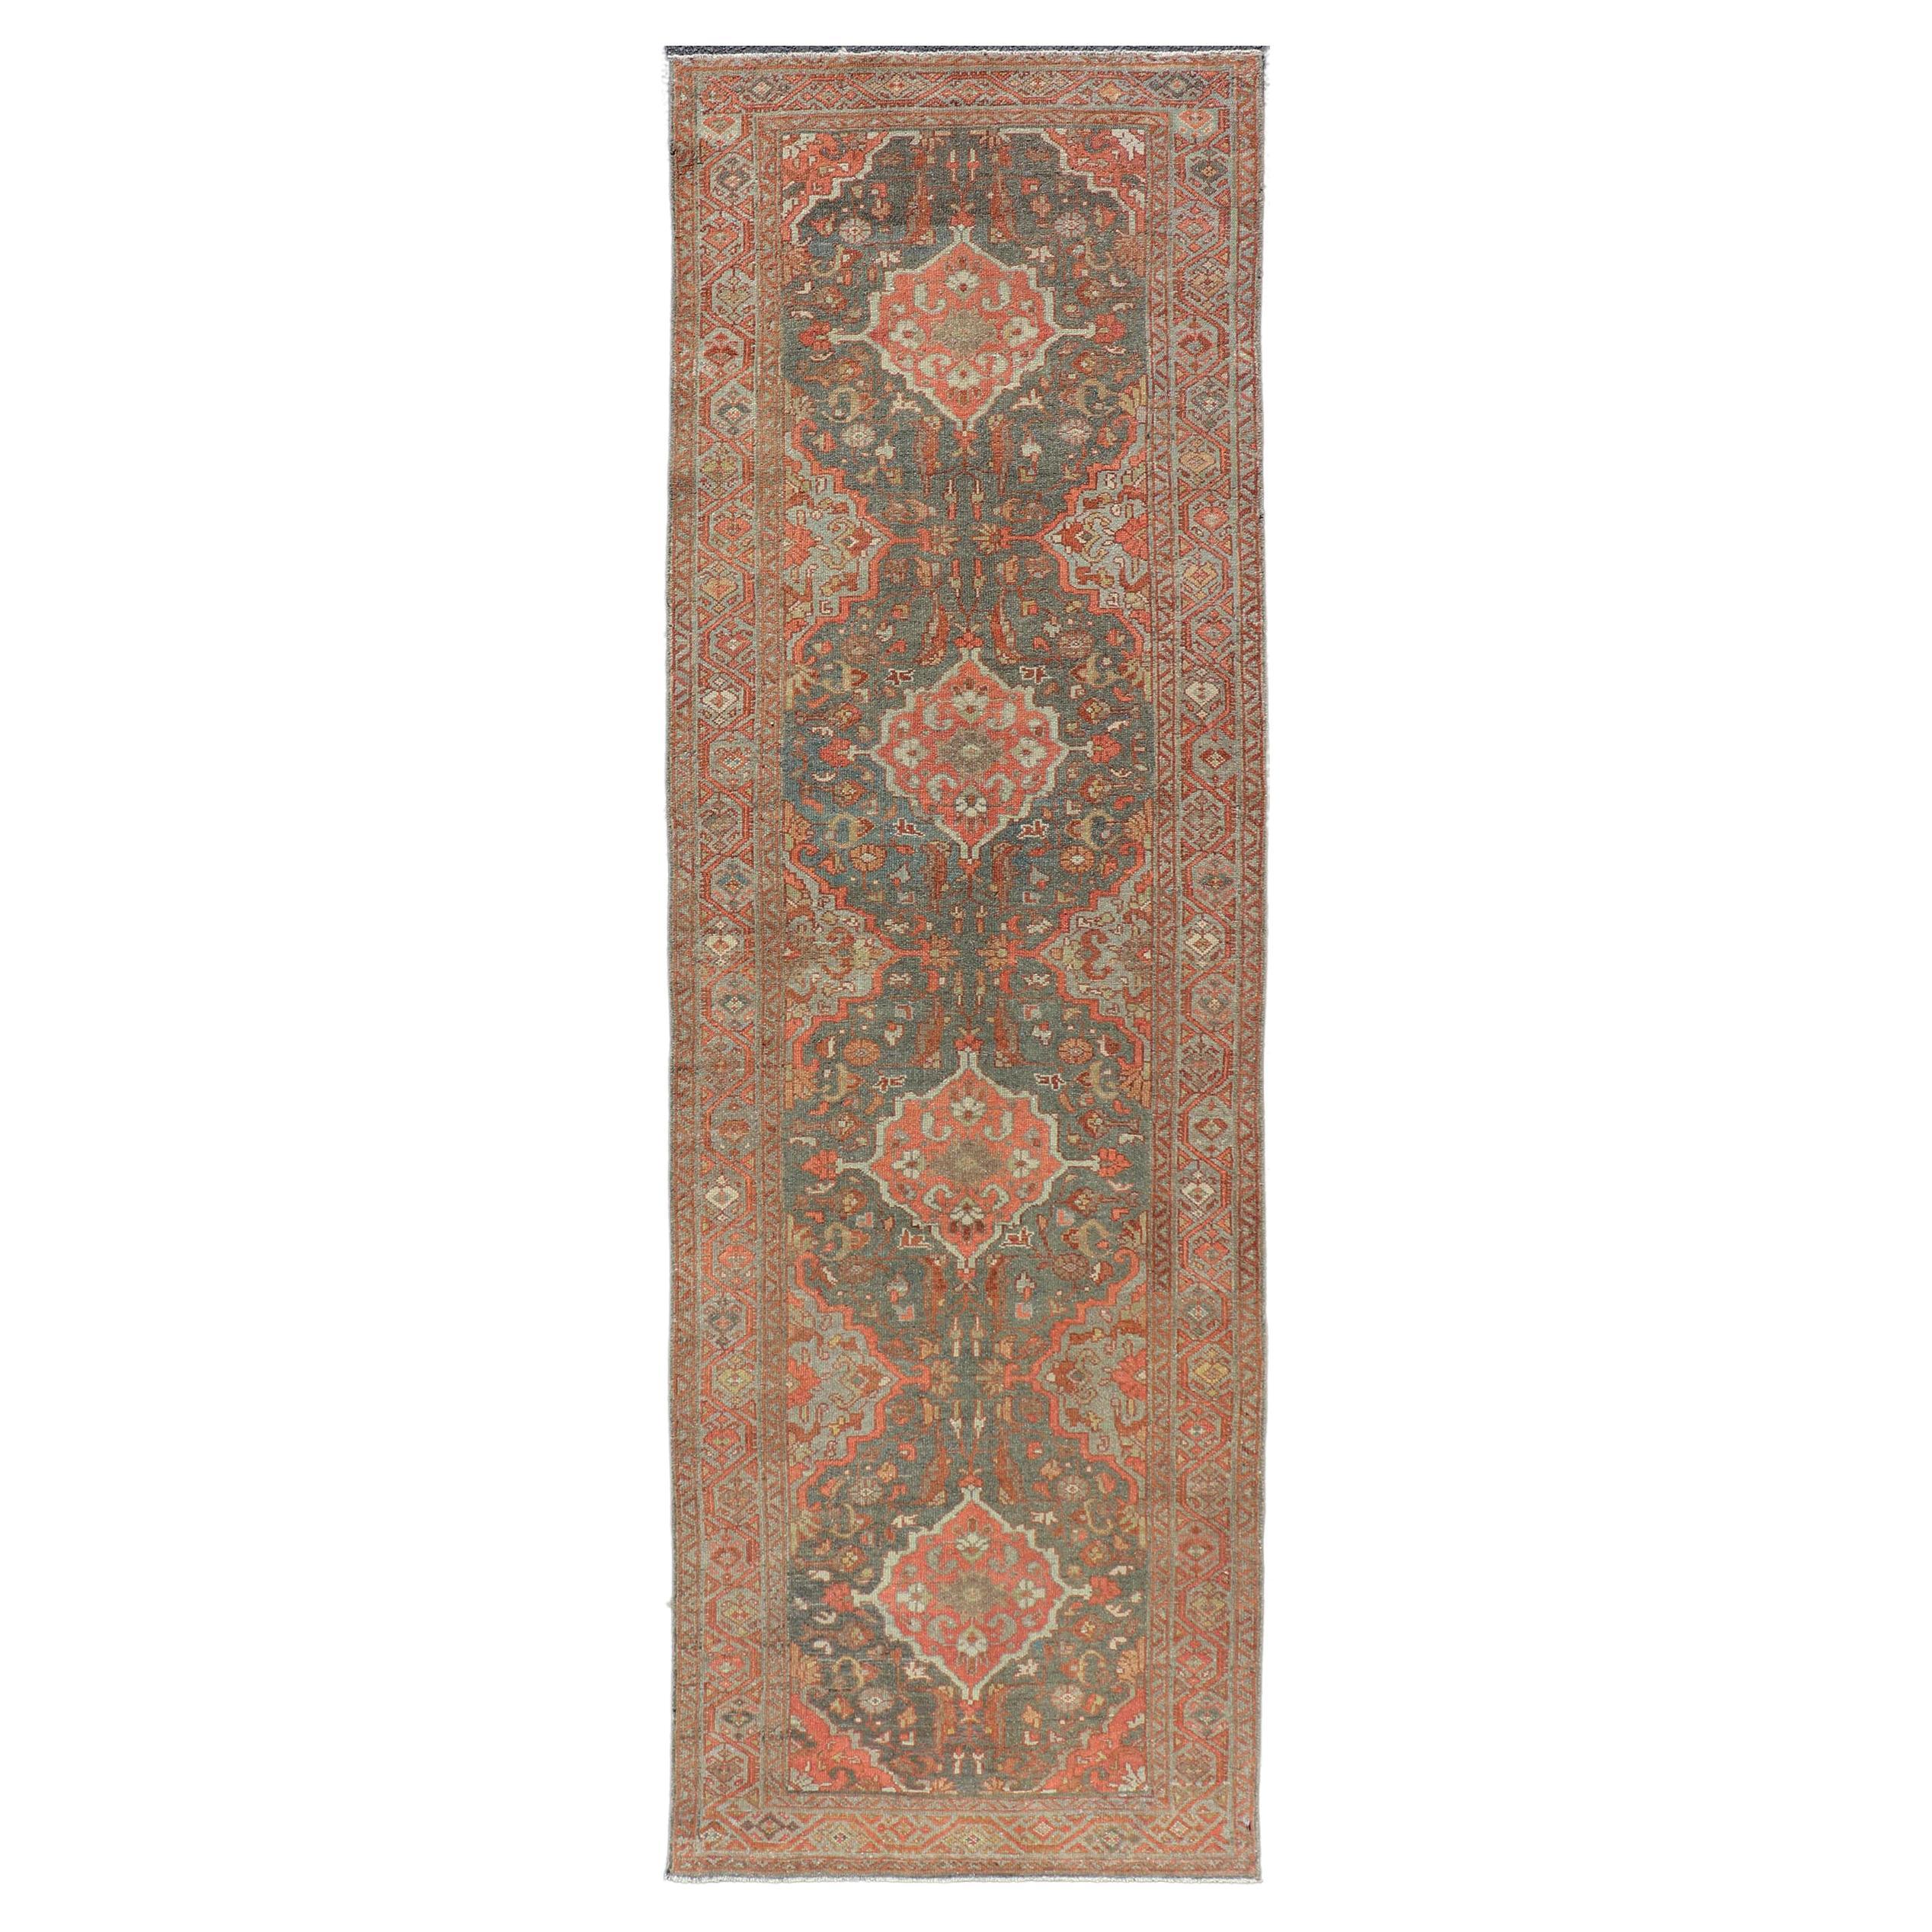 Tapis de couloir persan ancien Malayer avec motif de médaillons floraux sur toute la surface